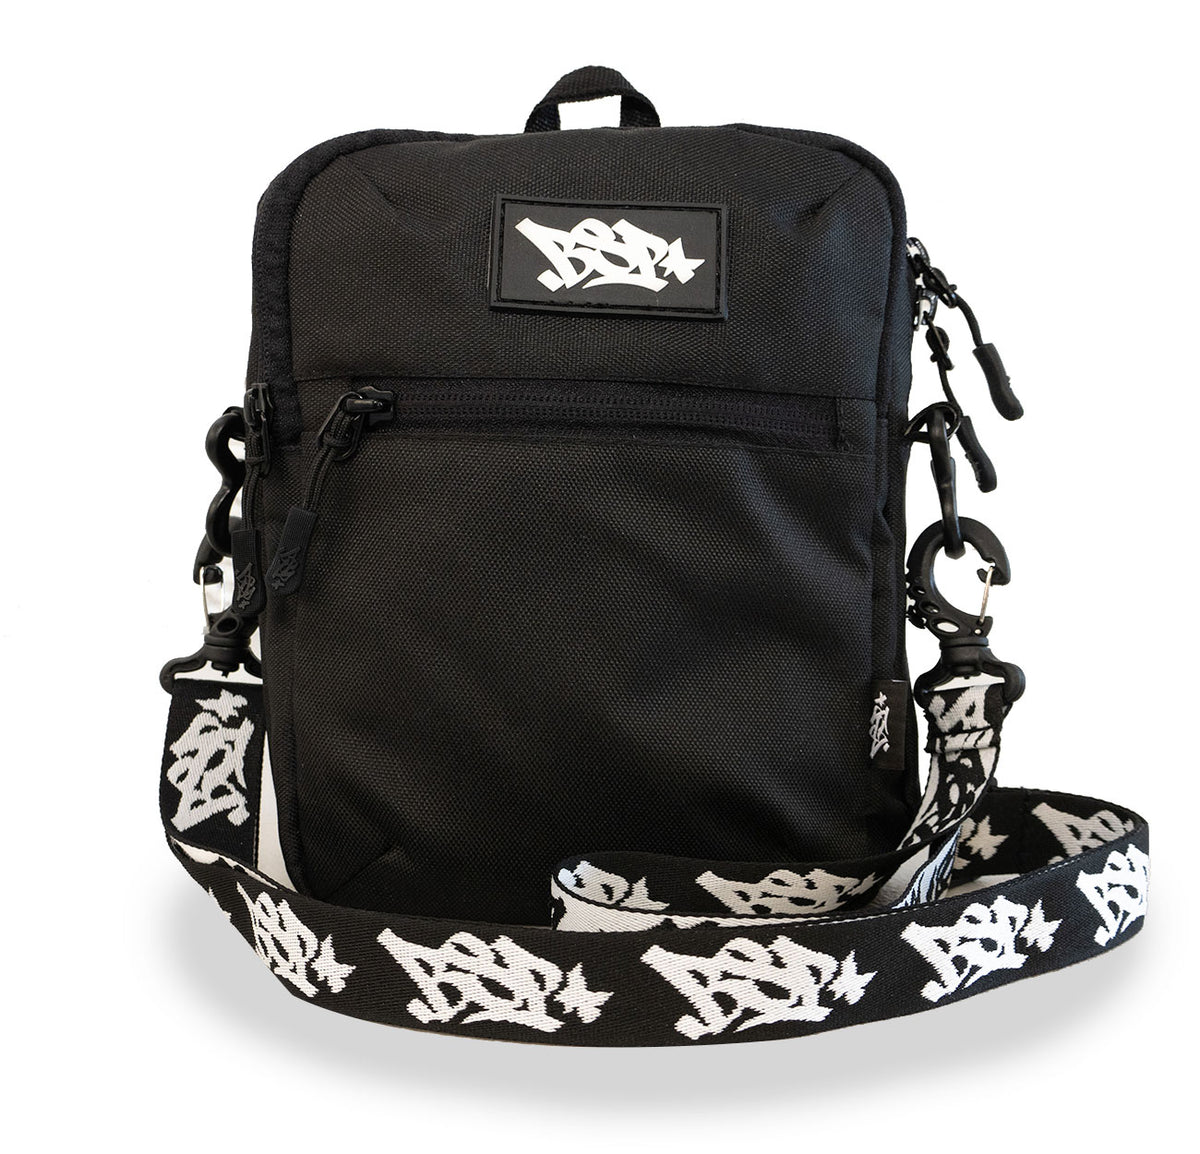 Drifter Side Bag - Black